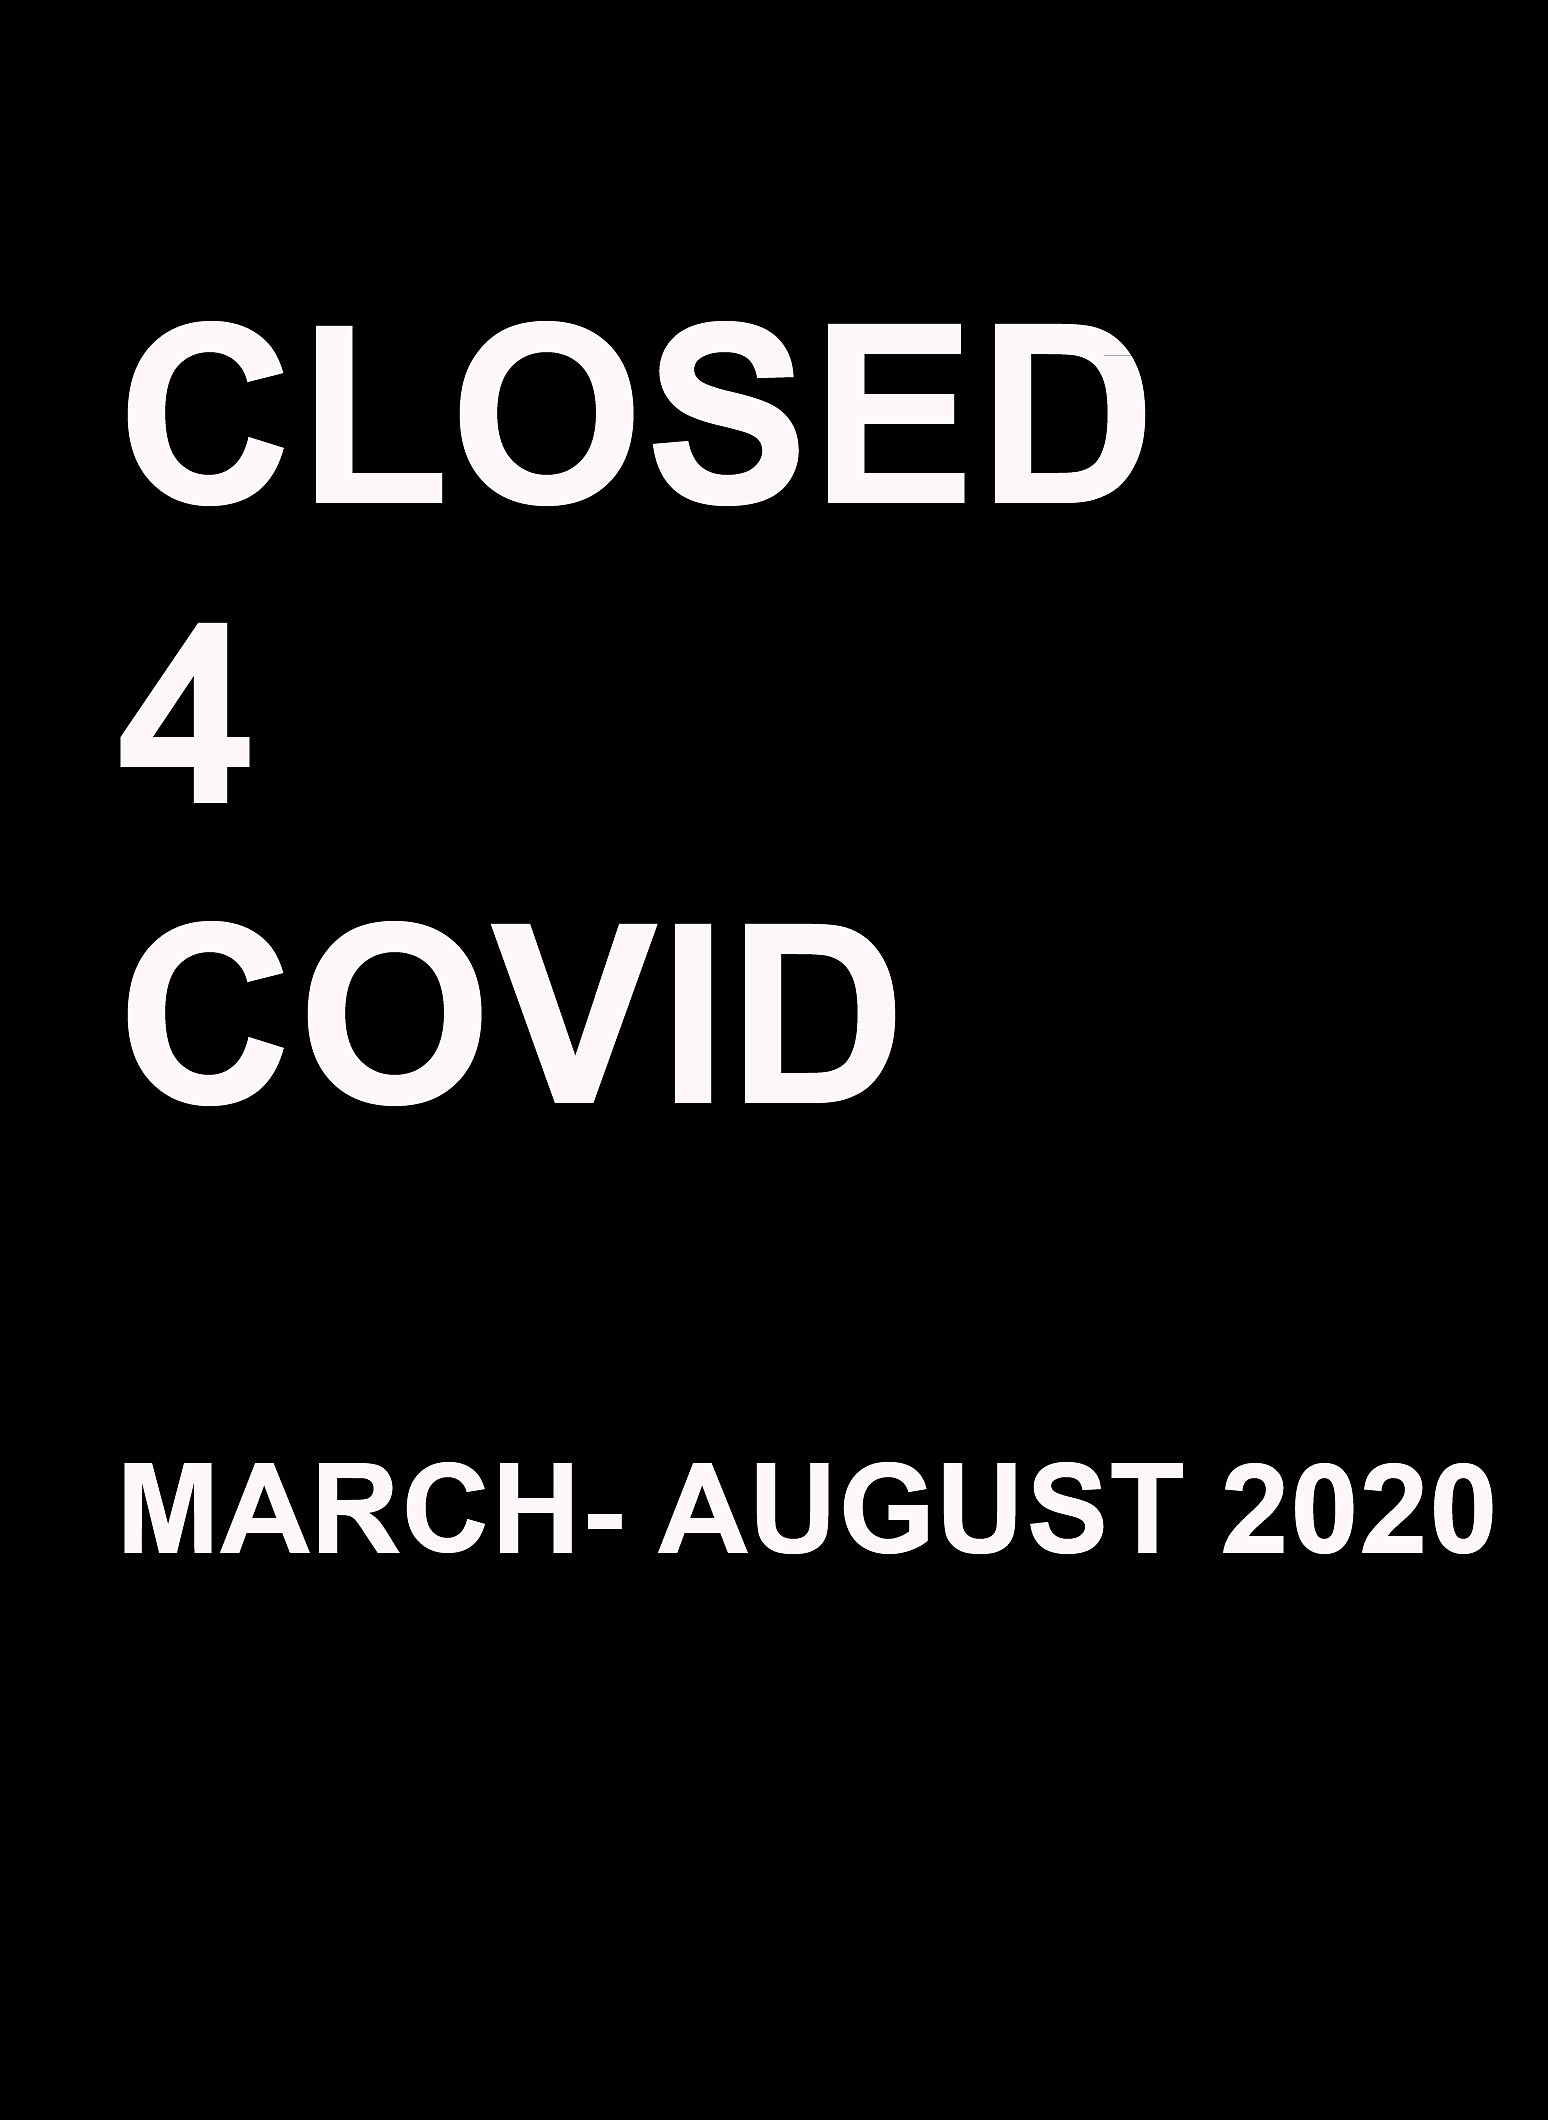 PRESS RELEASE: COVID, Mar 31 - Aug 31, 2020